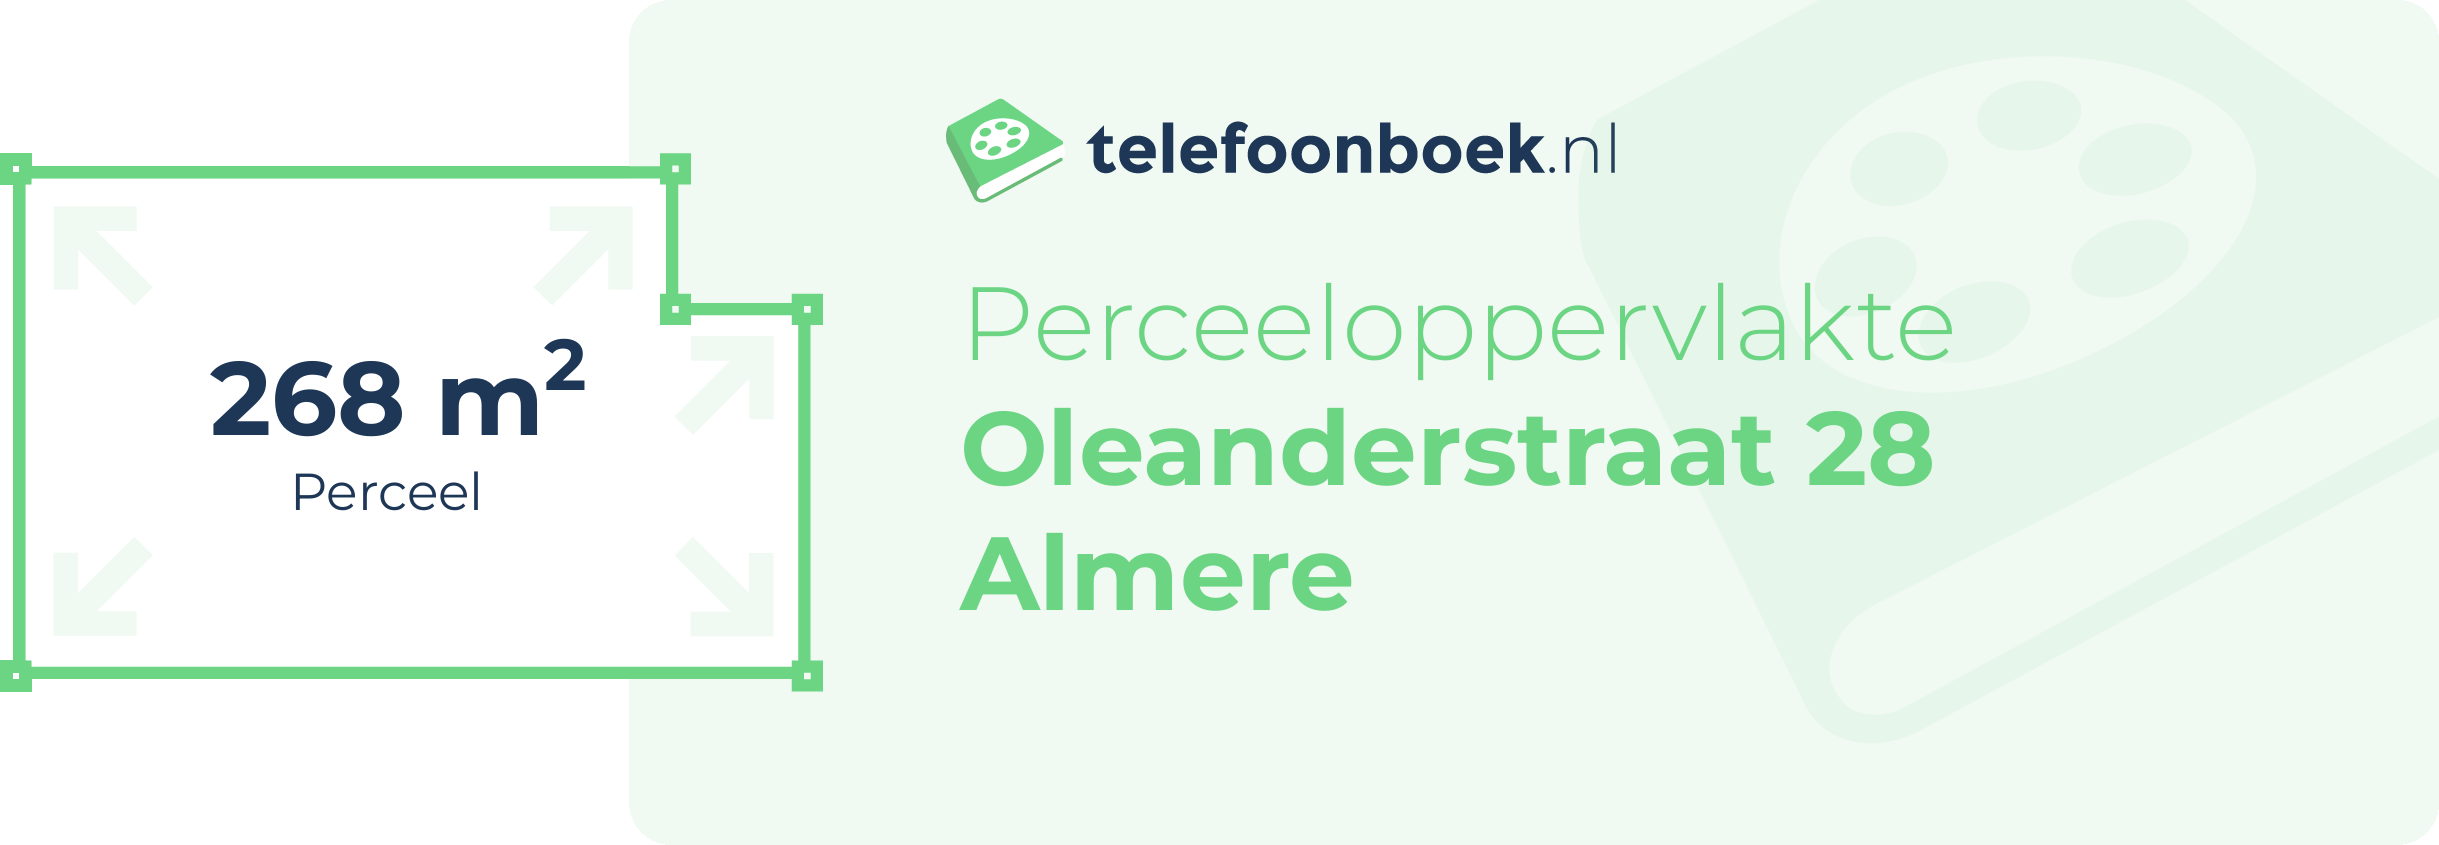 Perceeloppervlakte Oleanderstraat 28 Almere